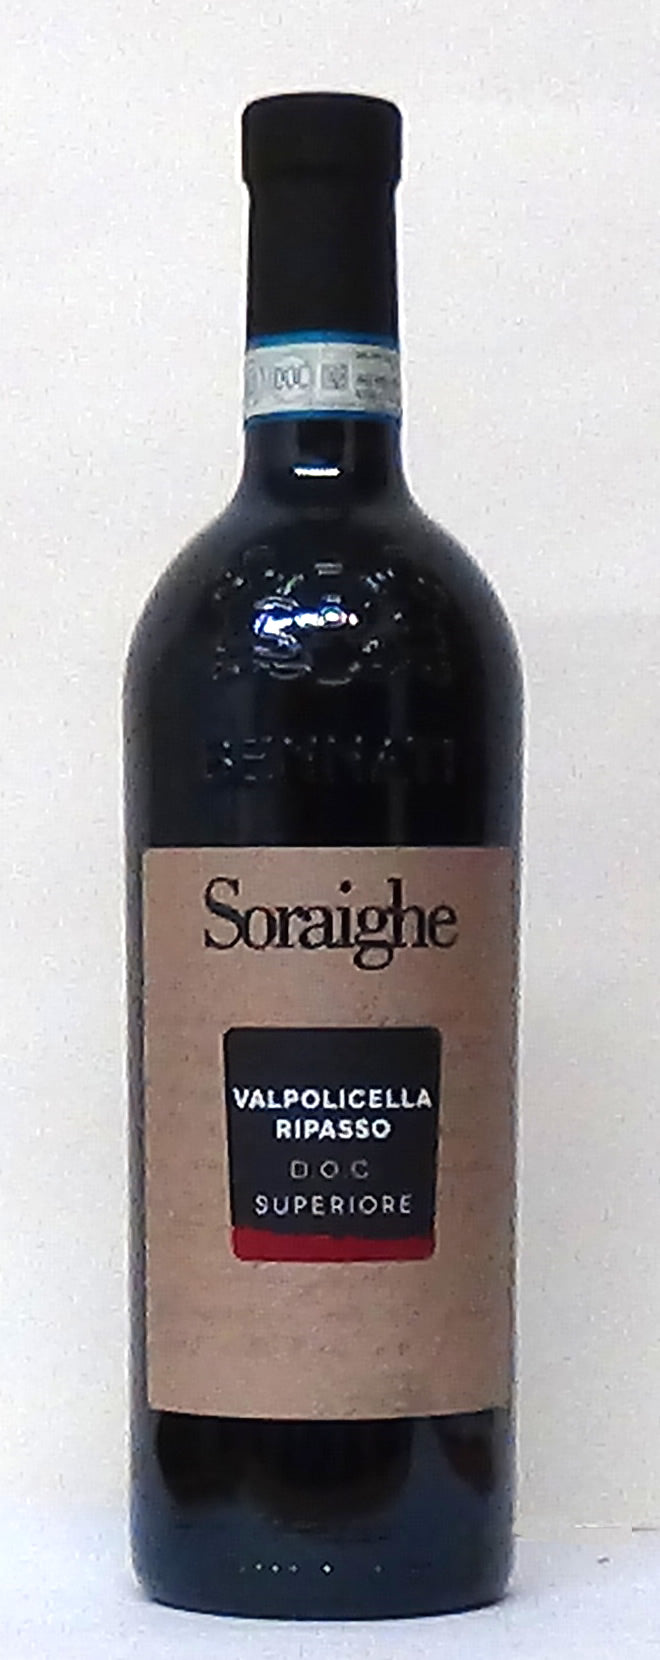 2017 Soraighe Valpolicella Ripasso Superiore - M&M Personal Vintners L